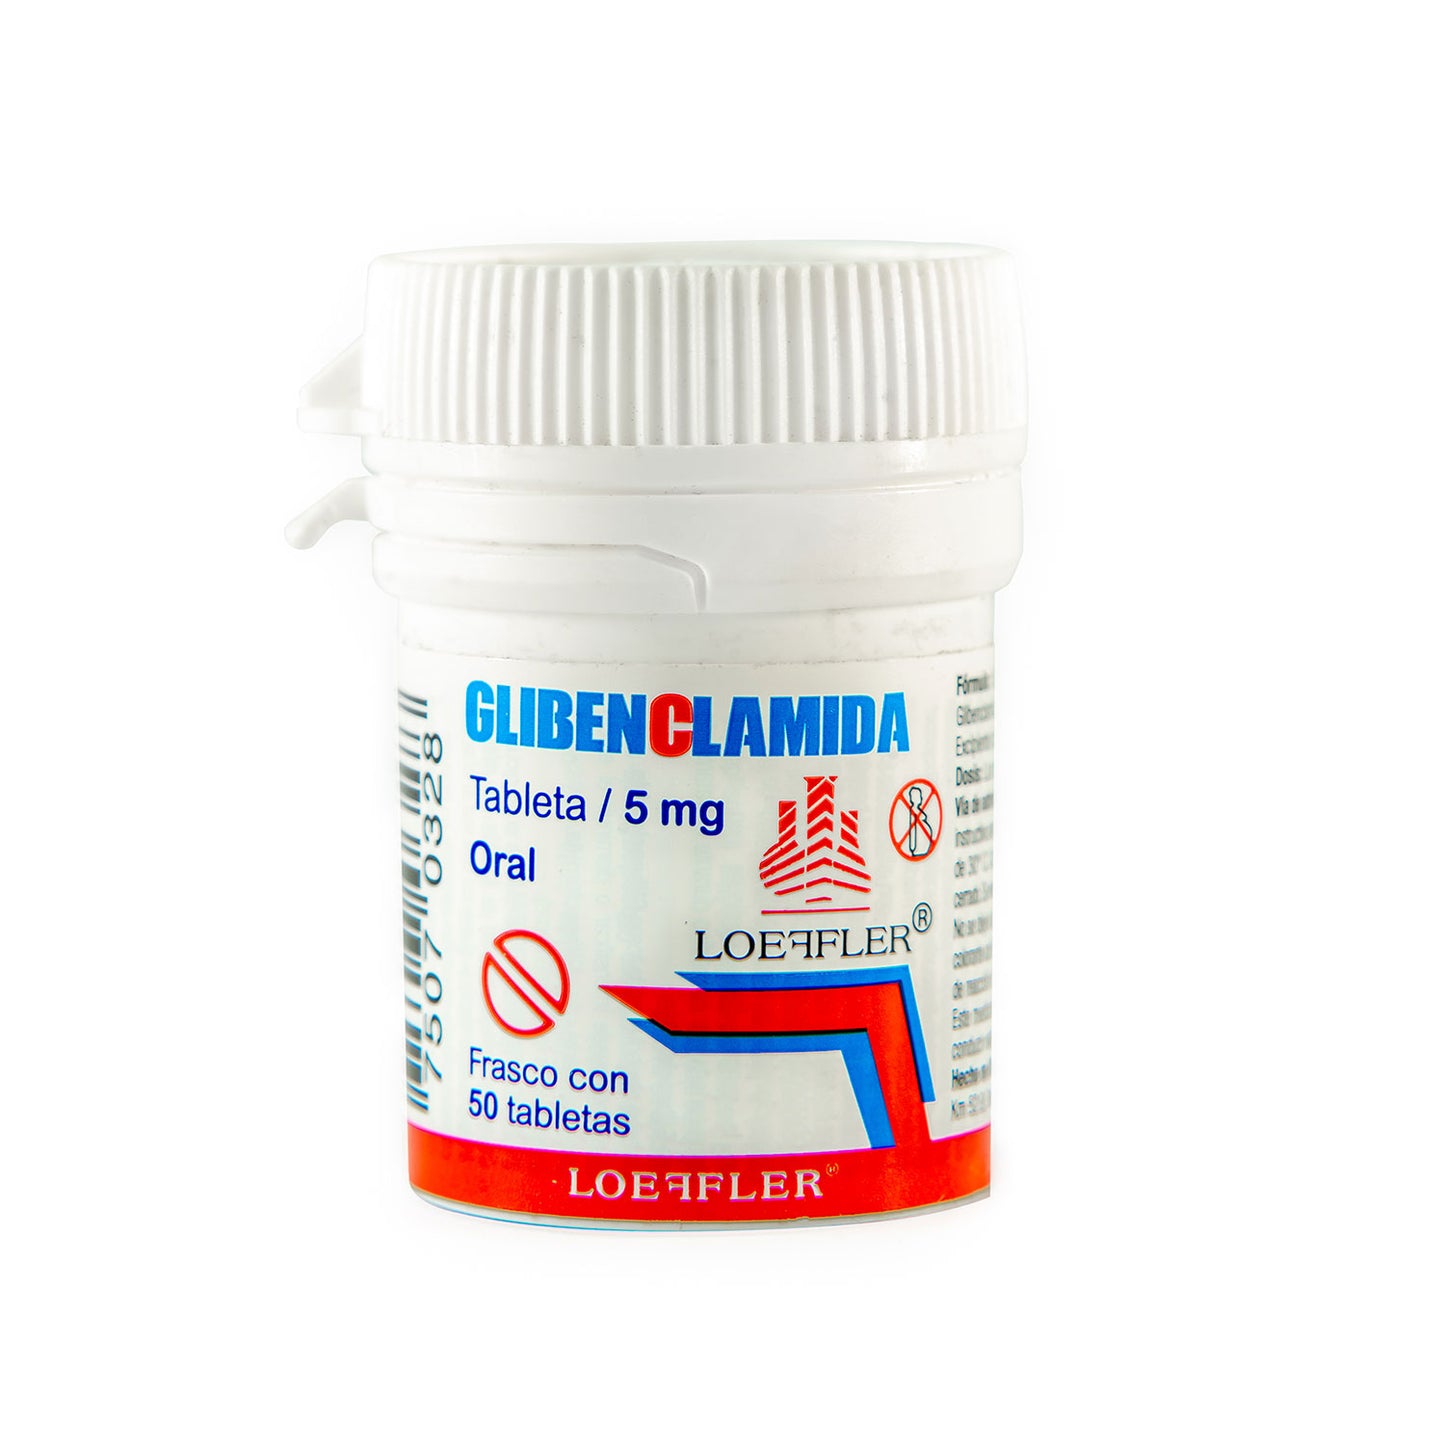 Glibenclamida, 5 mg, 50 tabletas